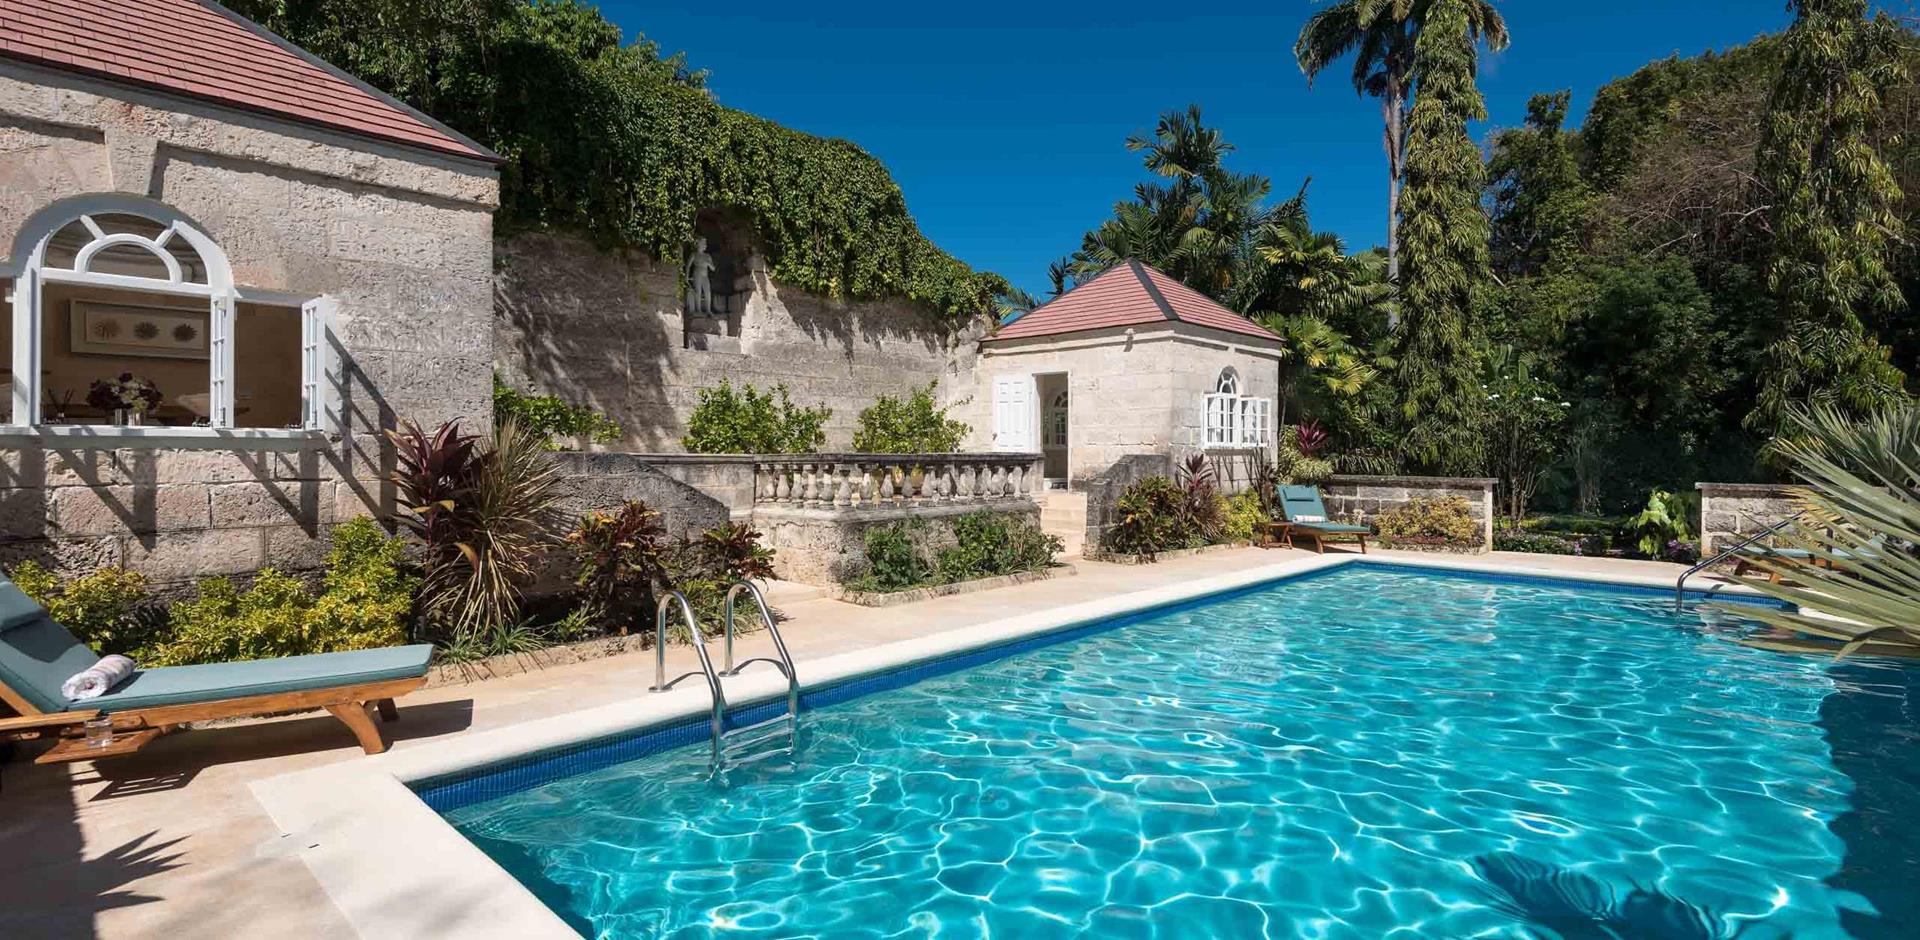 Pool area, Mahogany Grove, Barbados, Caribbean